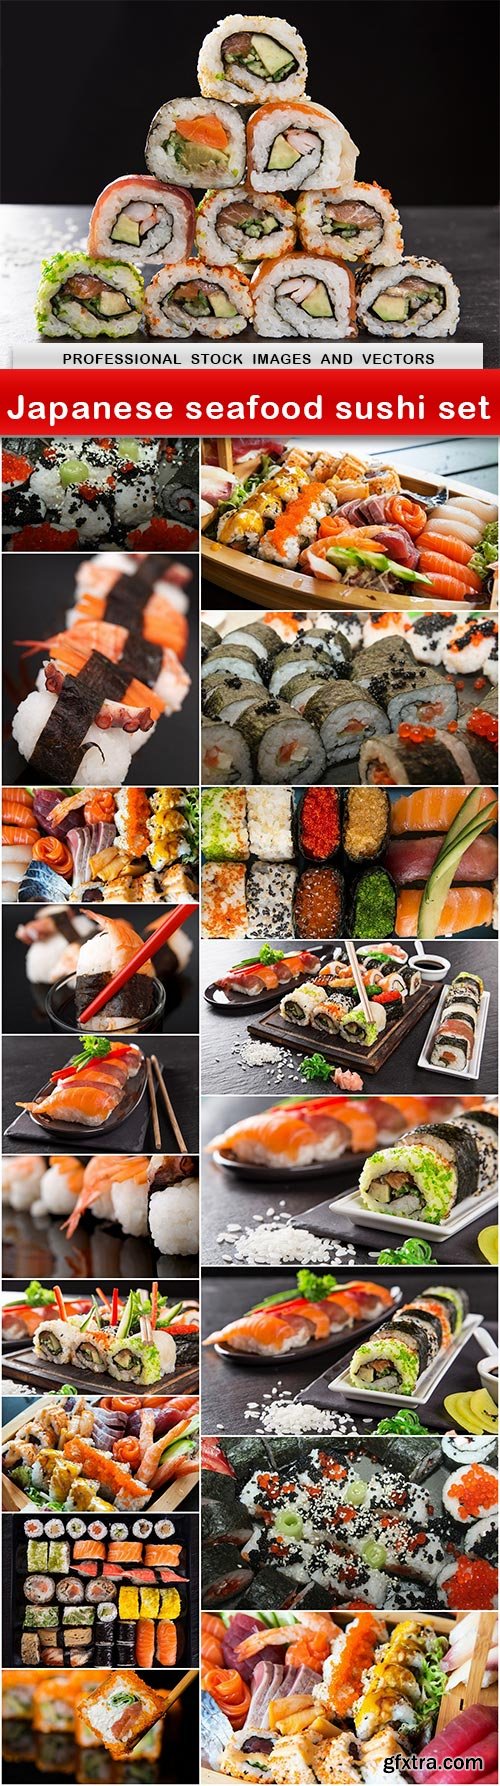 Japanese seafood sushi set - 19 UHQ JPEG